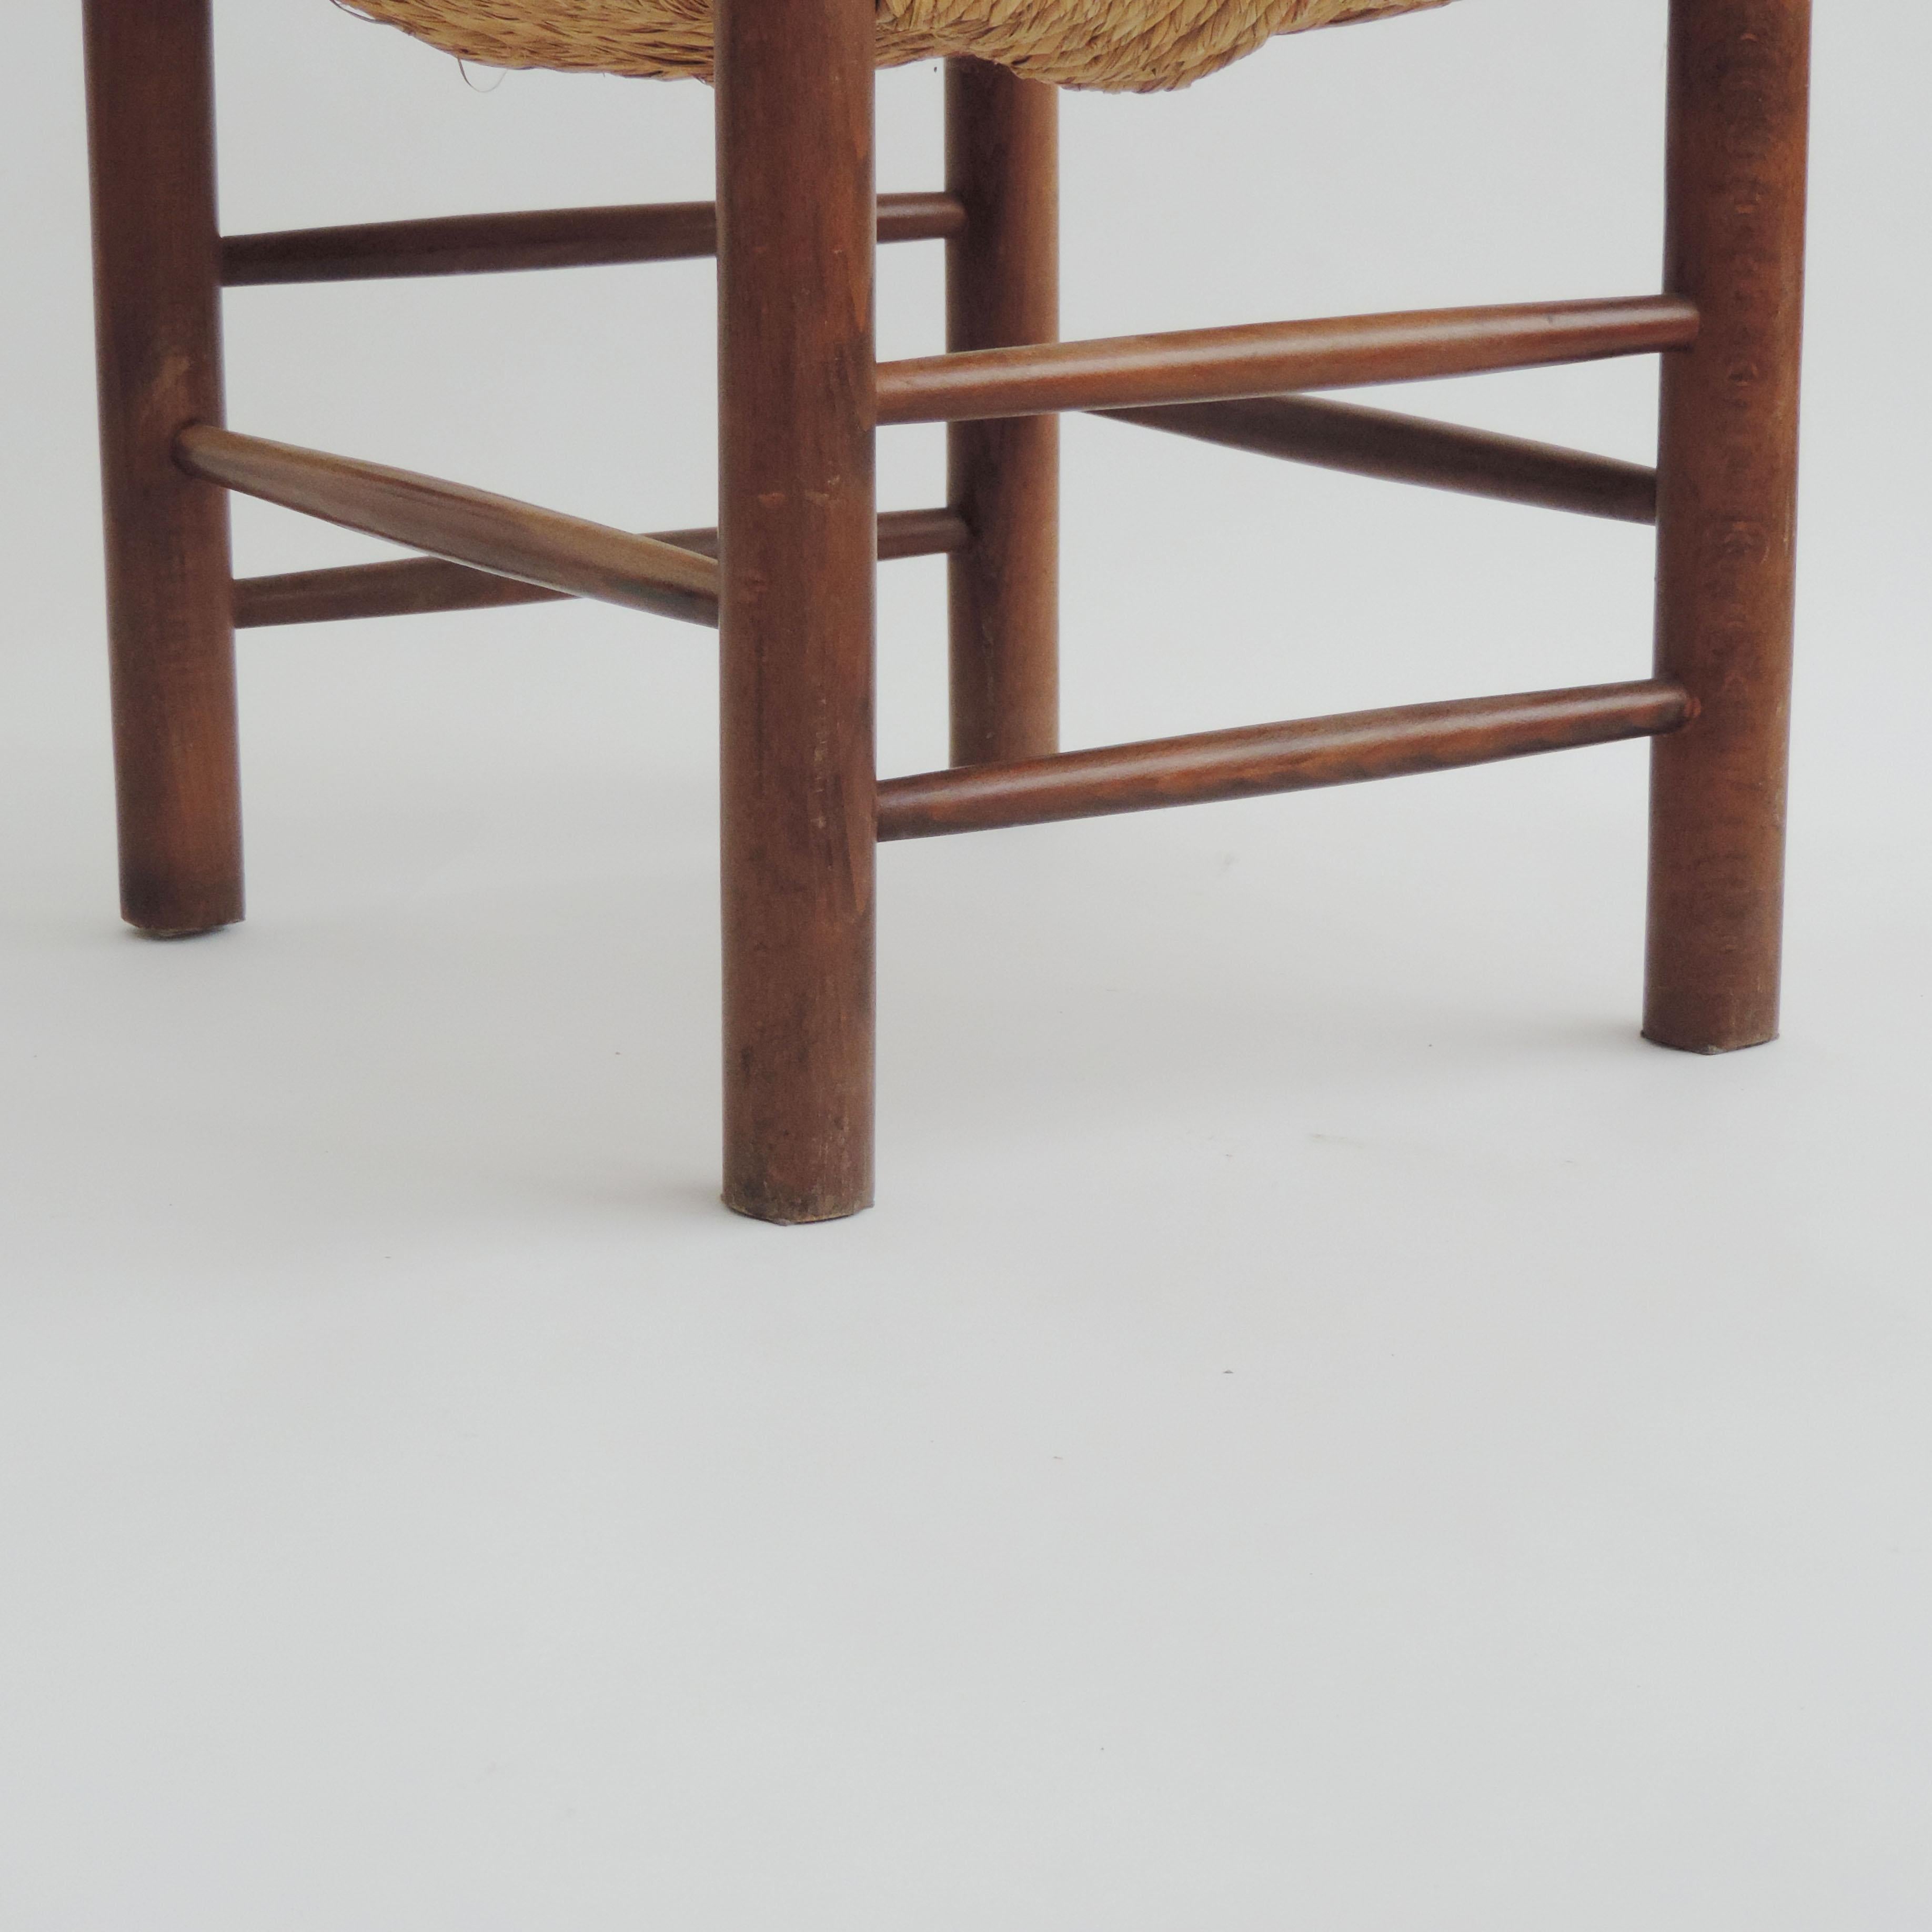 Magnifique fauteuil rustique italien des années 1960 en paille et bois dans le style de Charlotte Perriand.
Siège très robuste.